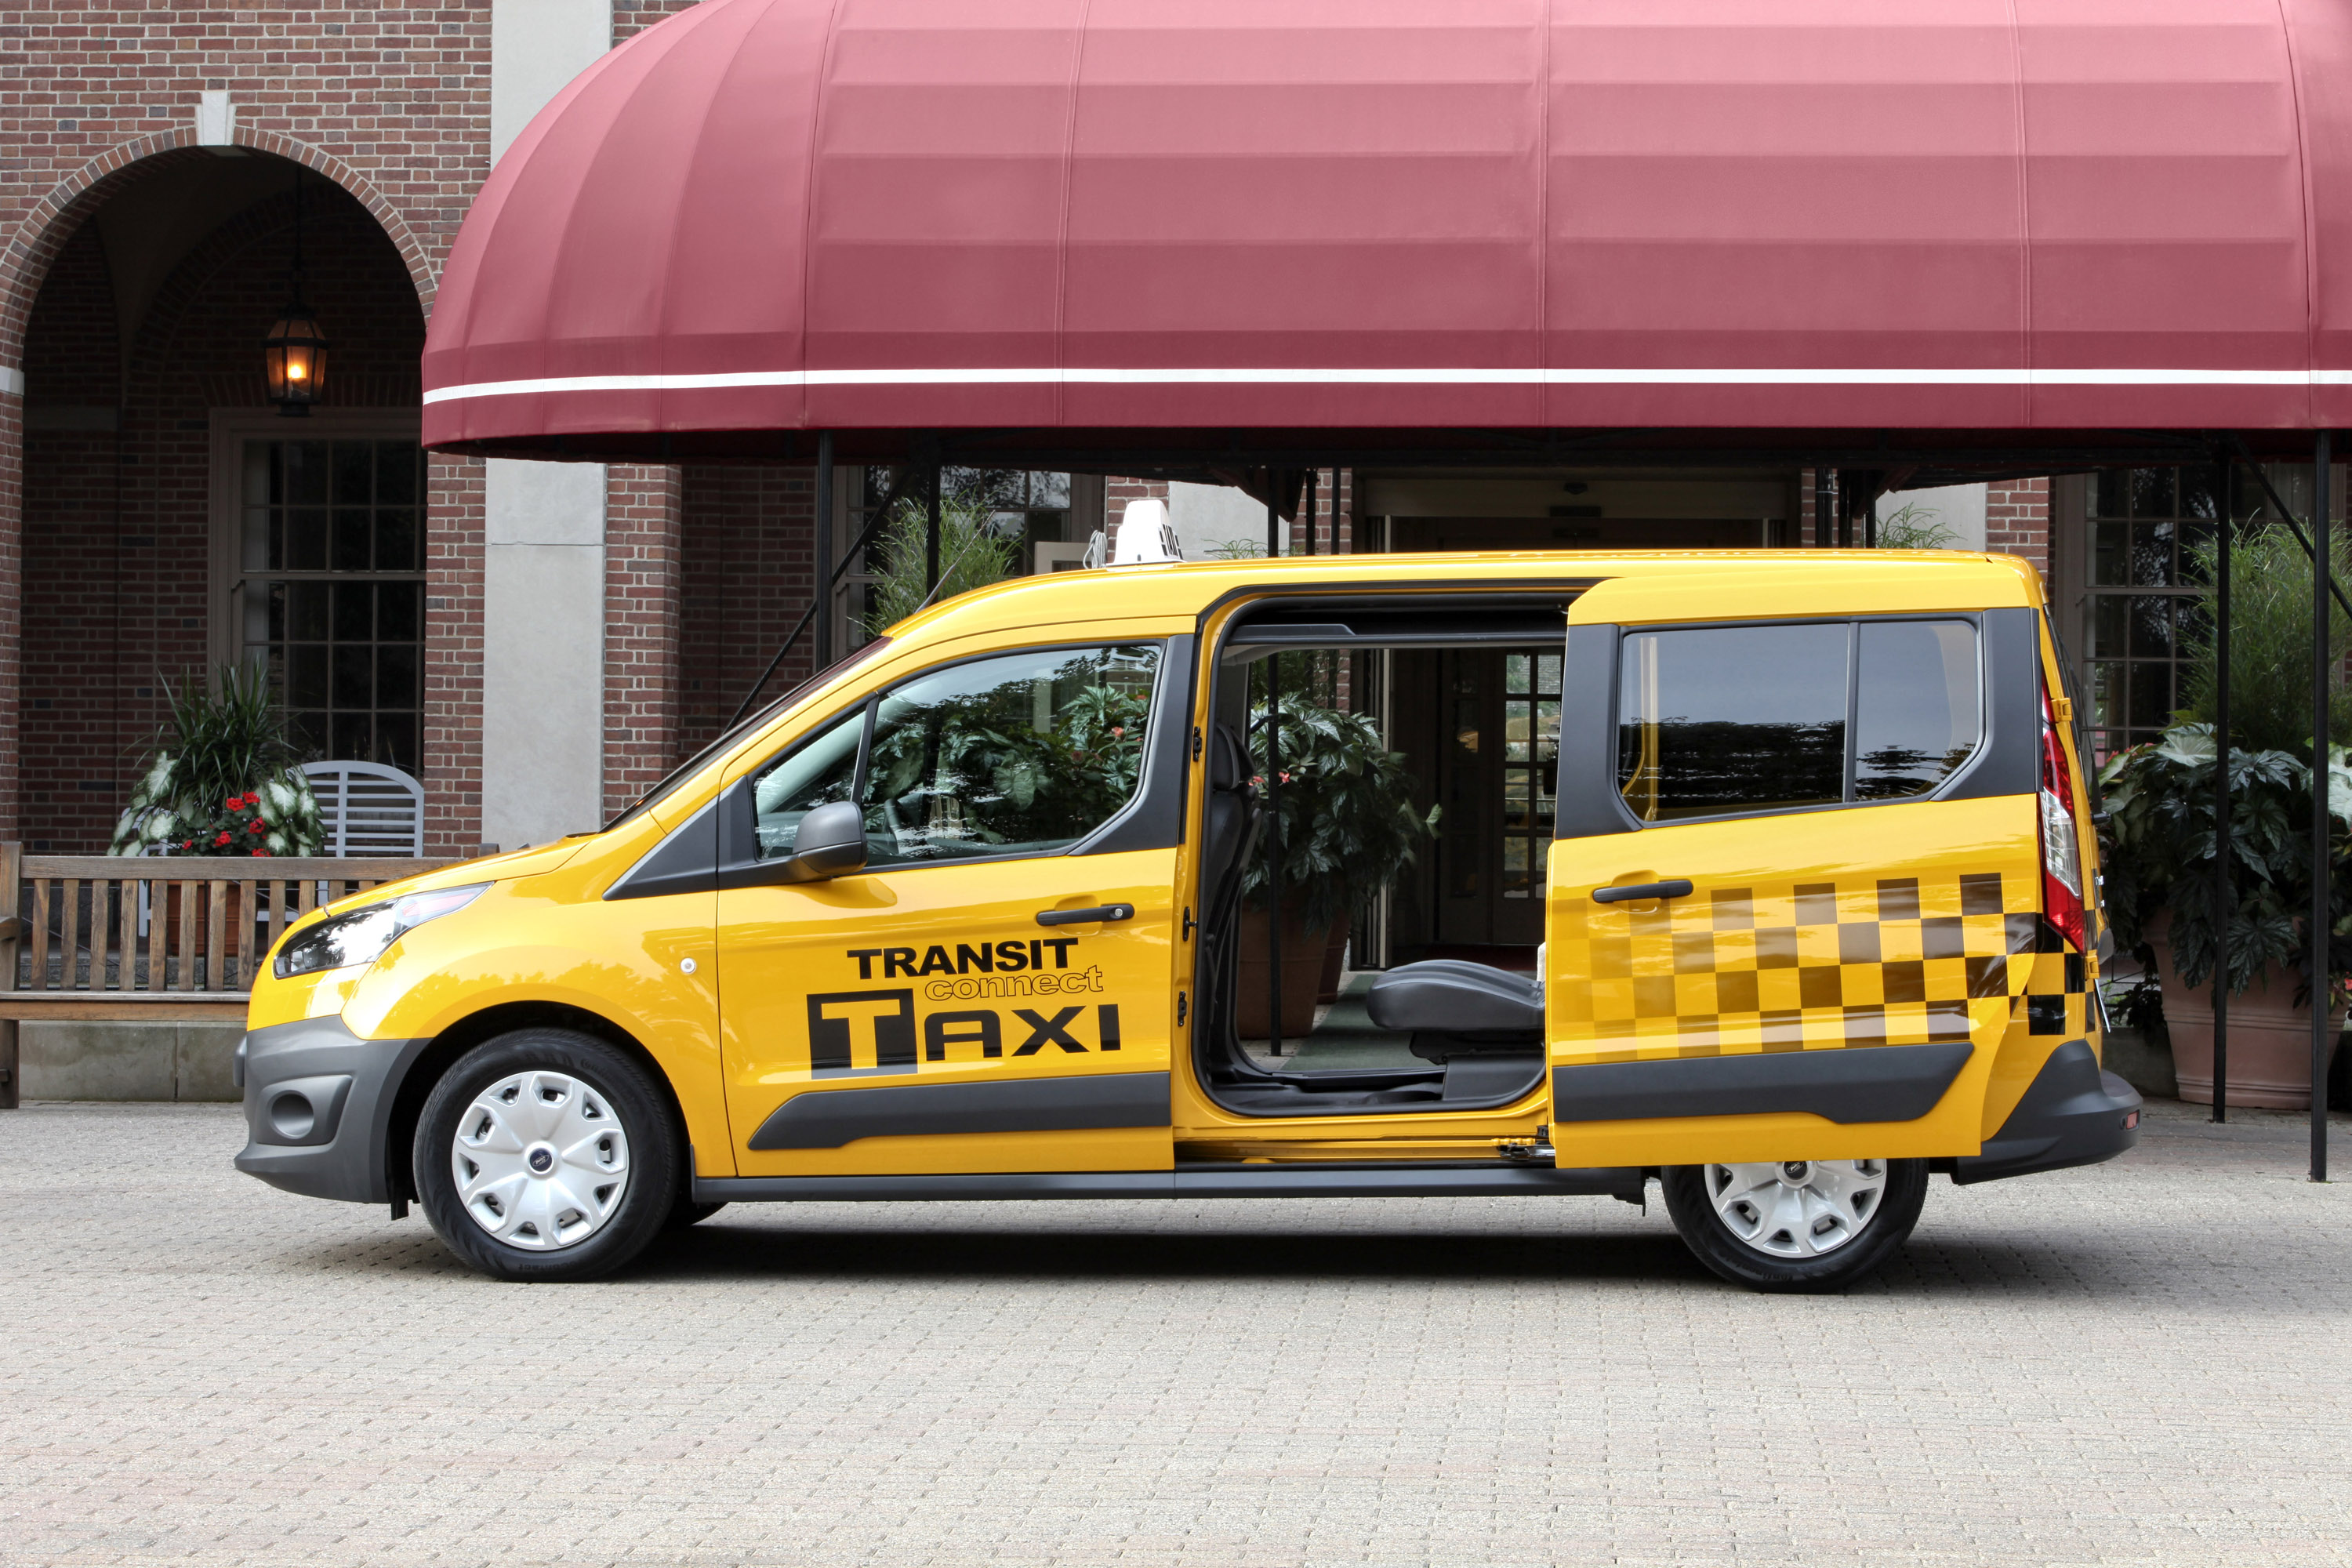 Такси транзит. Ford Transit connect Taxi. Форд Транзит Коннект такси. Форд Транзит микроавтобус такси машинка. Форд такси 2014 года.